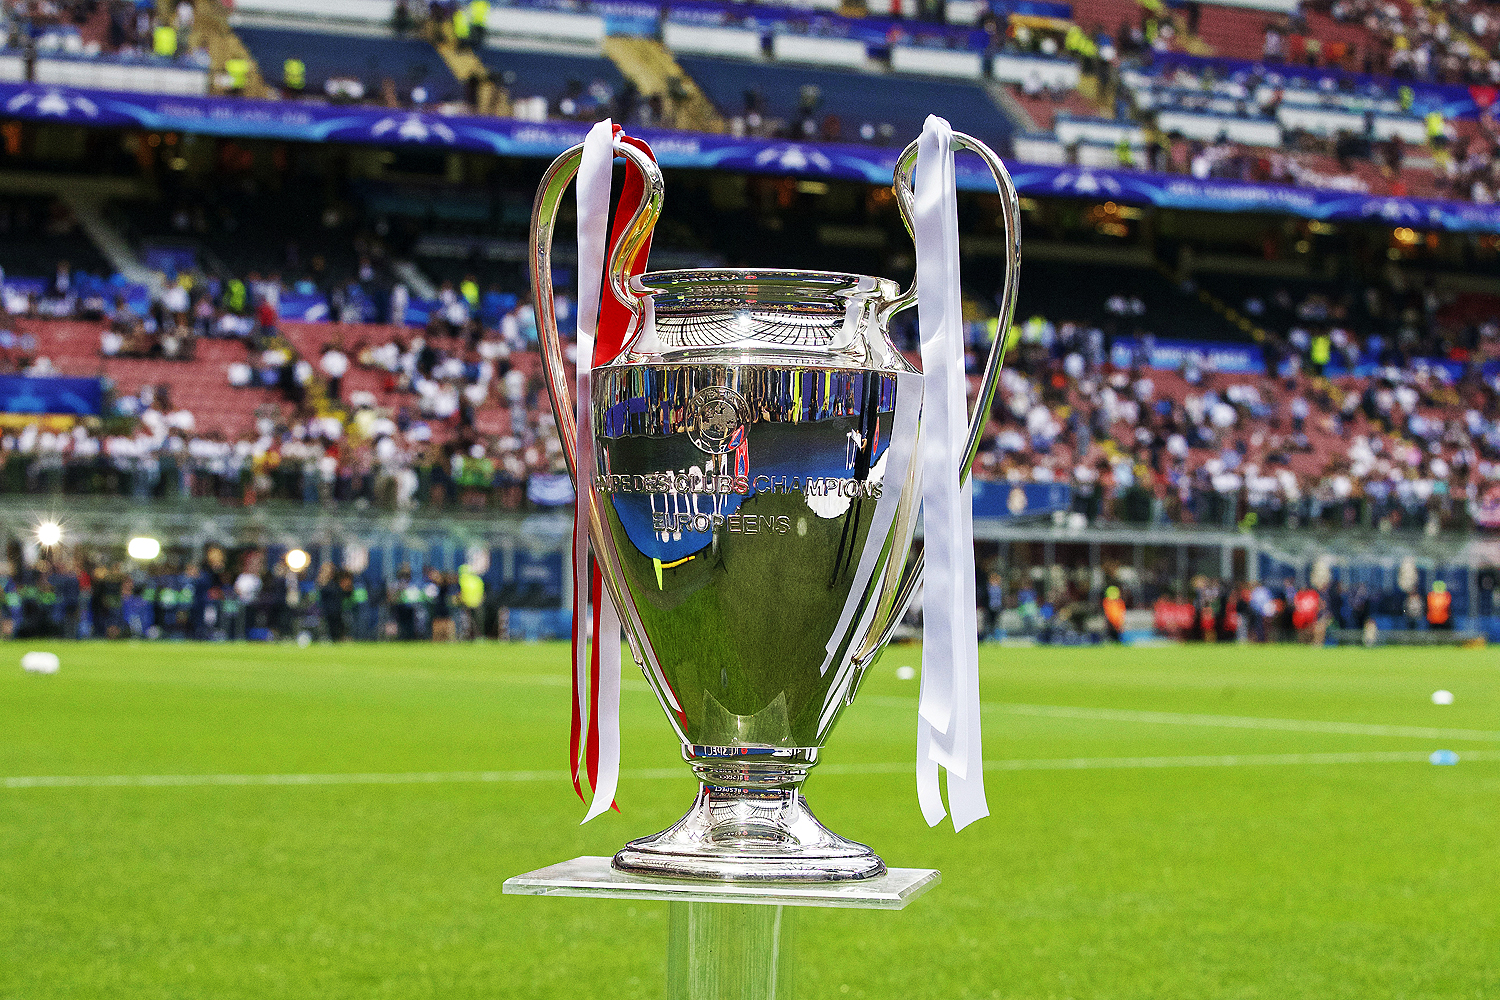 Os 5 eventos mais cool para ver a final da Champions League em SP